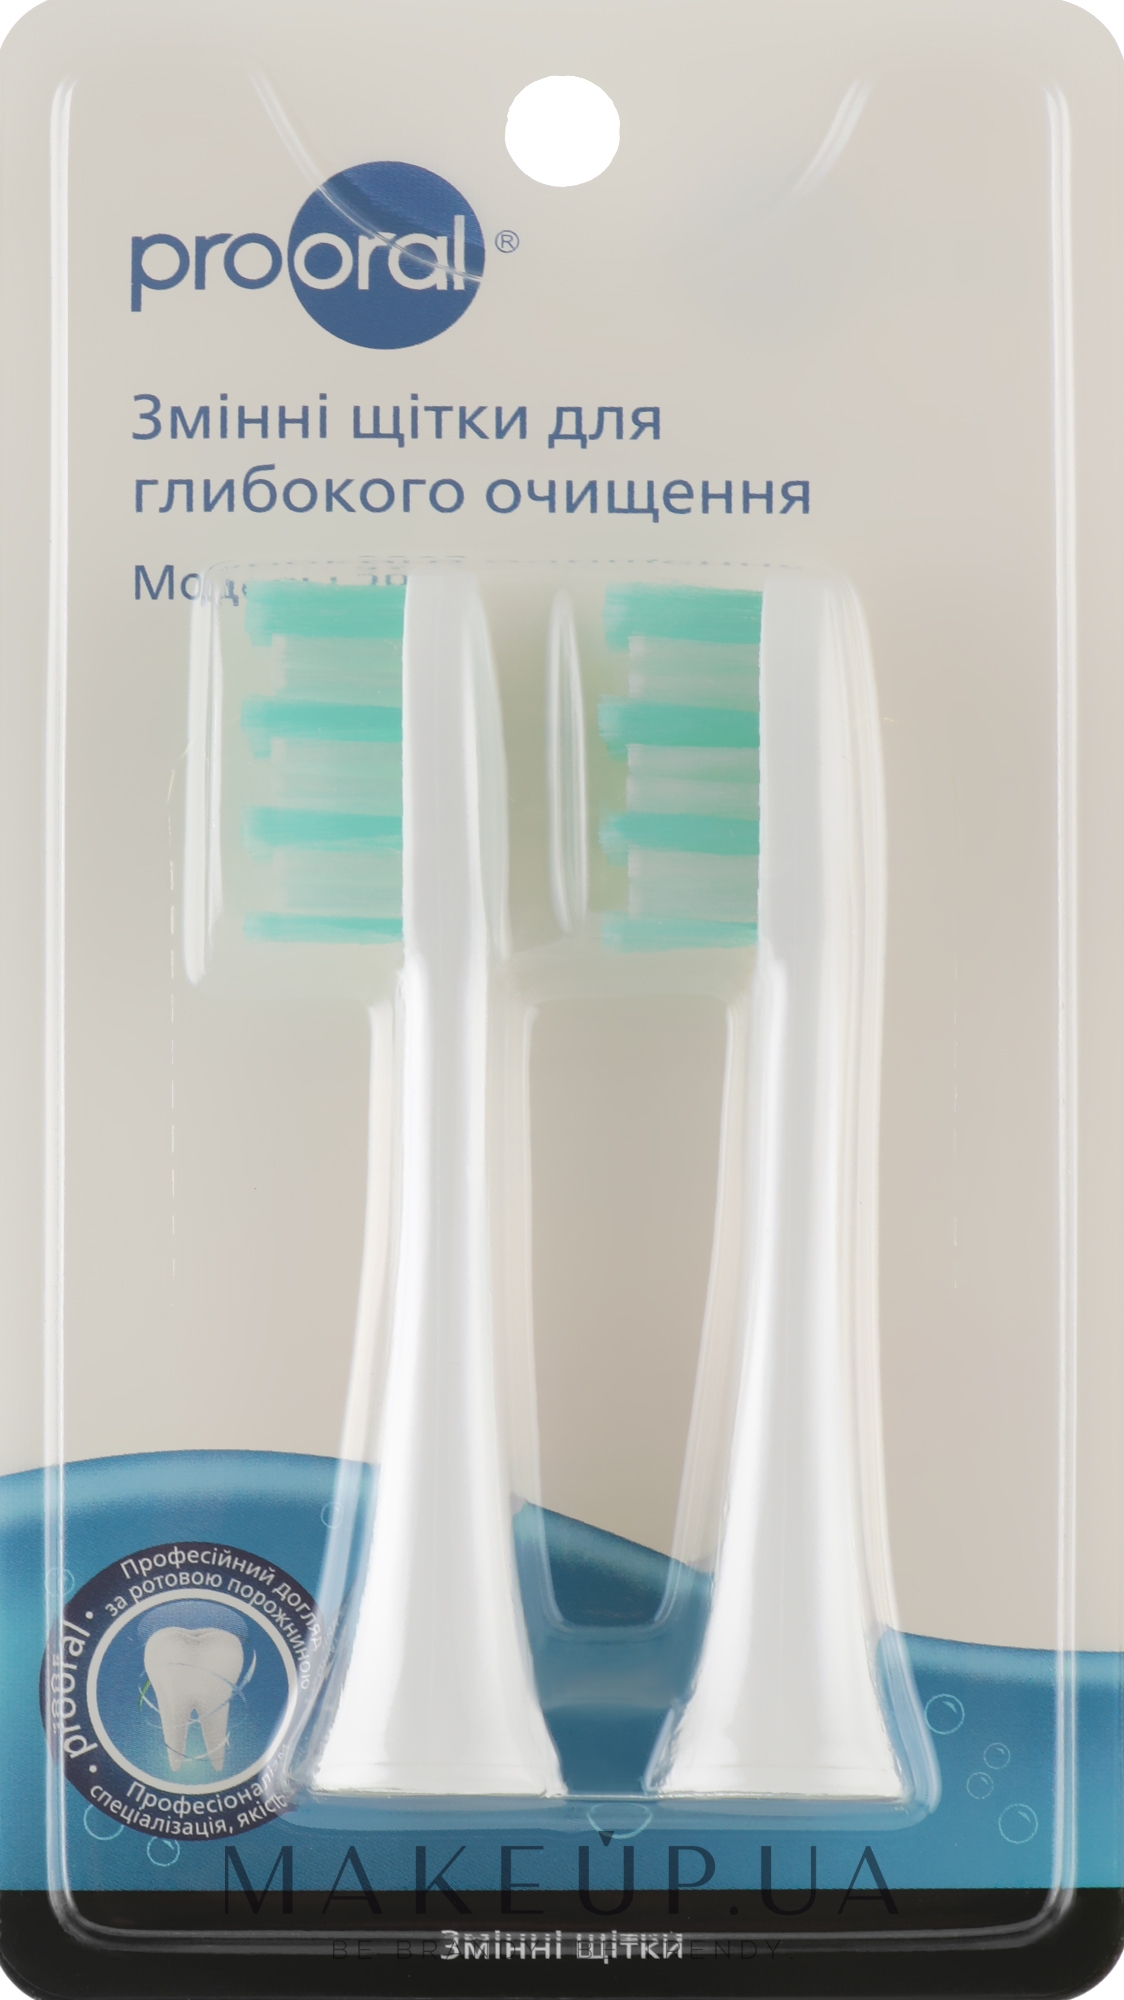 Щетки для глубокого очищения для звуковой зубной щетки T09 - Prooral — фото 2шт